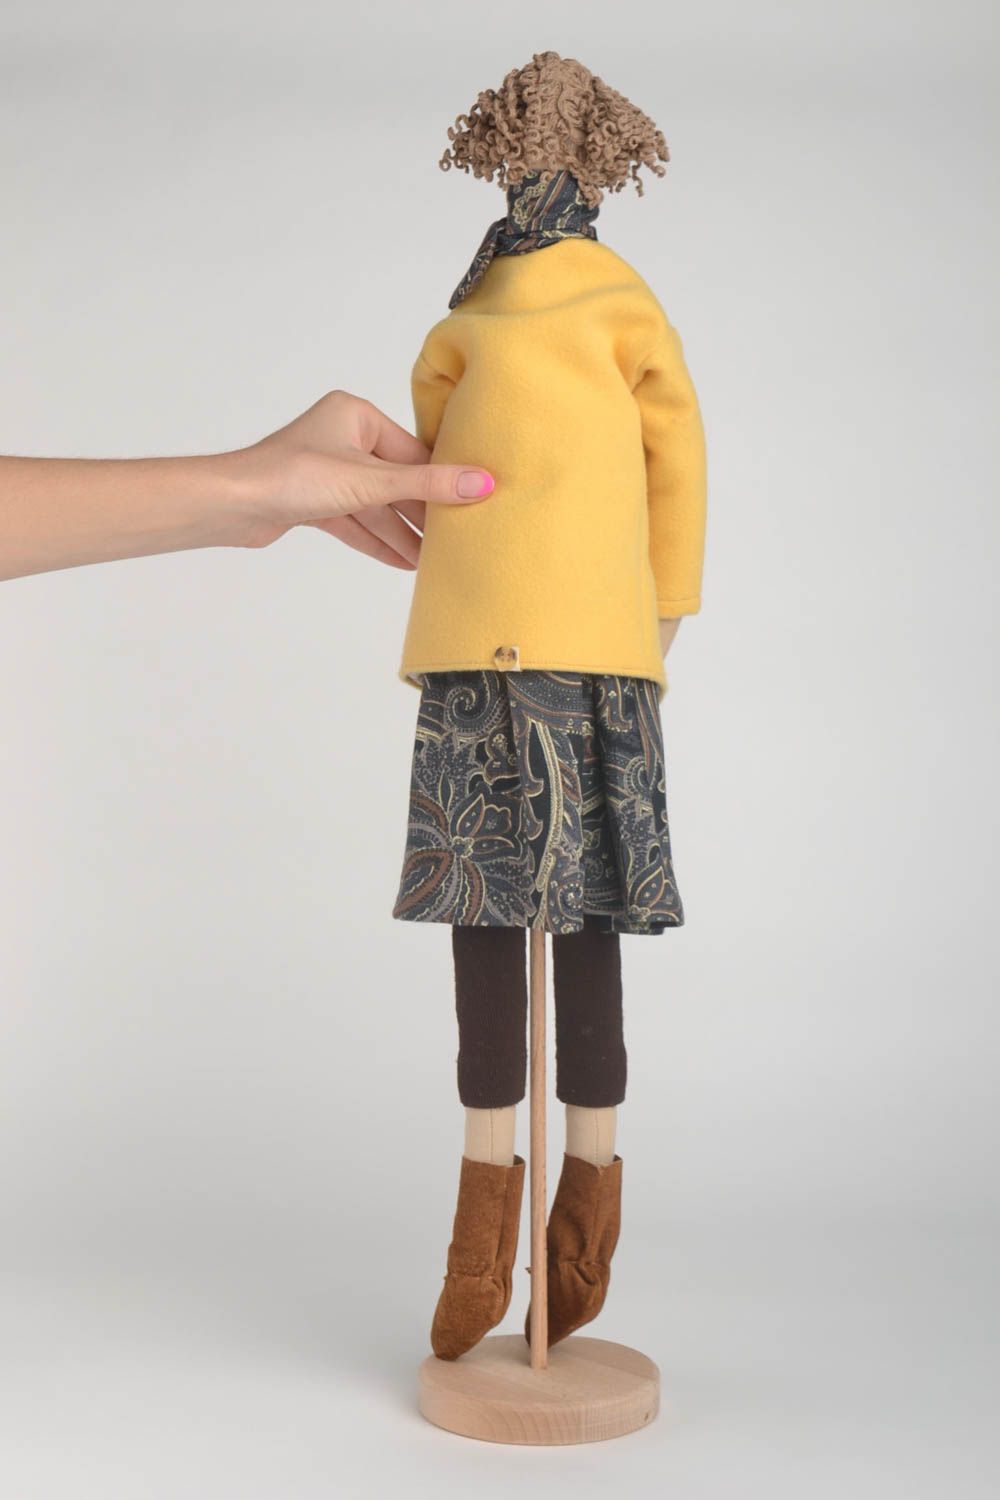 Handmade Puppe aus Stoff Haus Dekoration Geschenk für Frau mit Gestell in Gelb foto 4